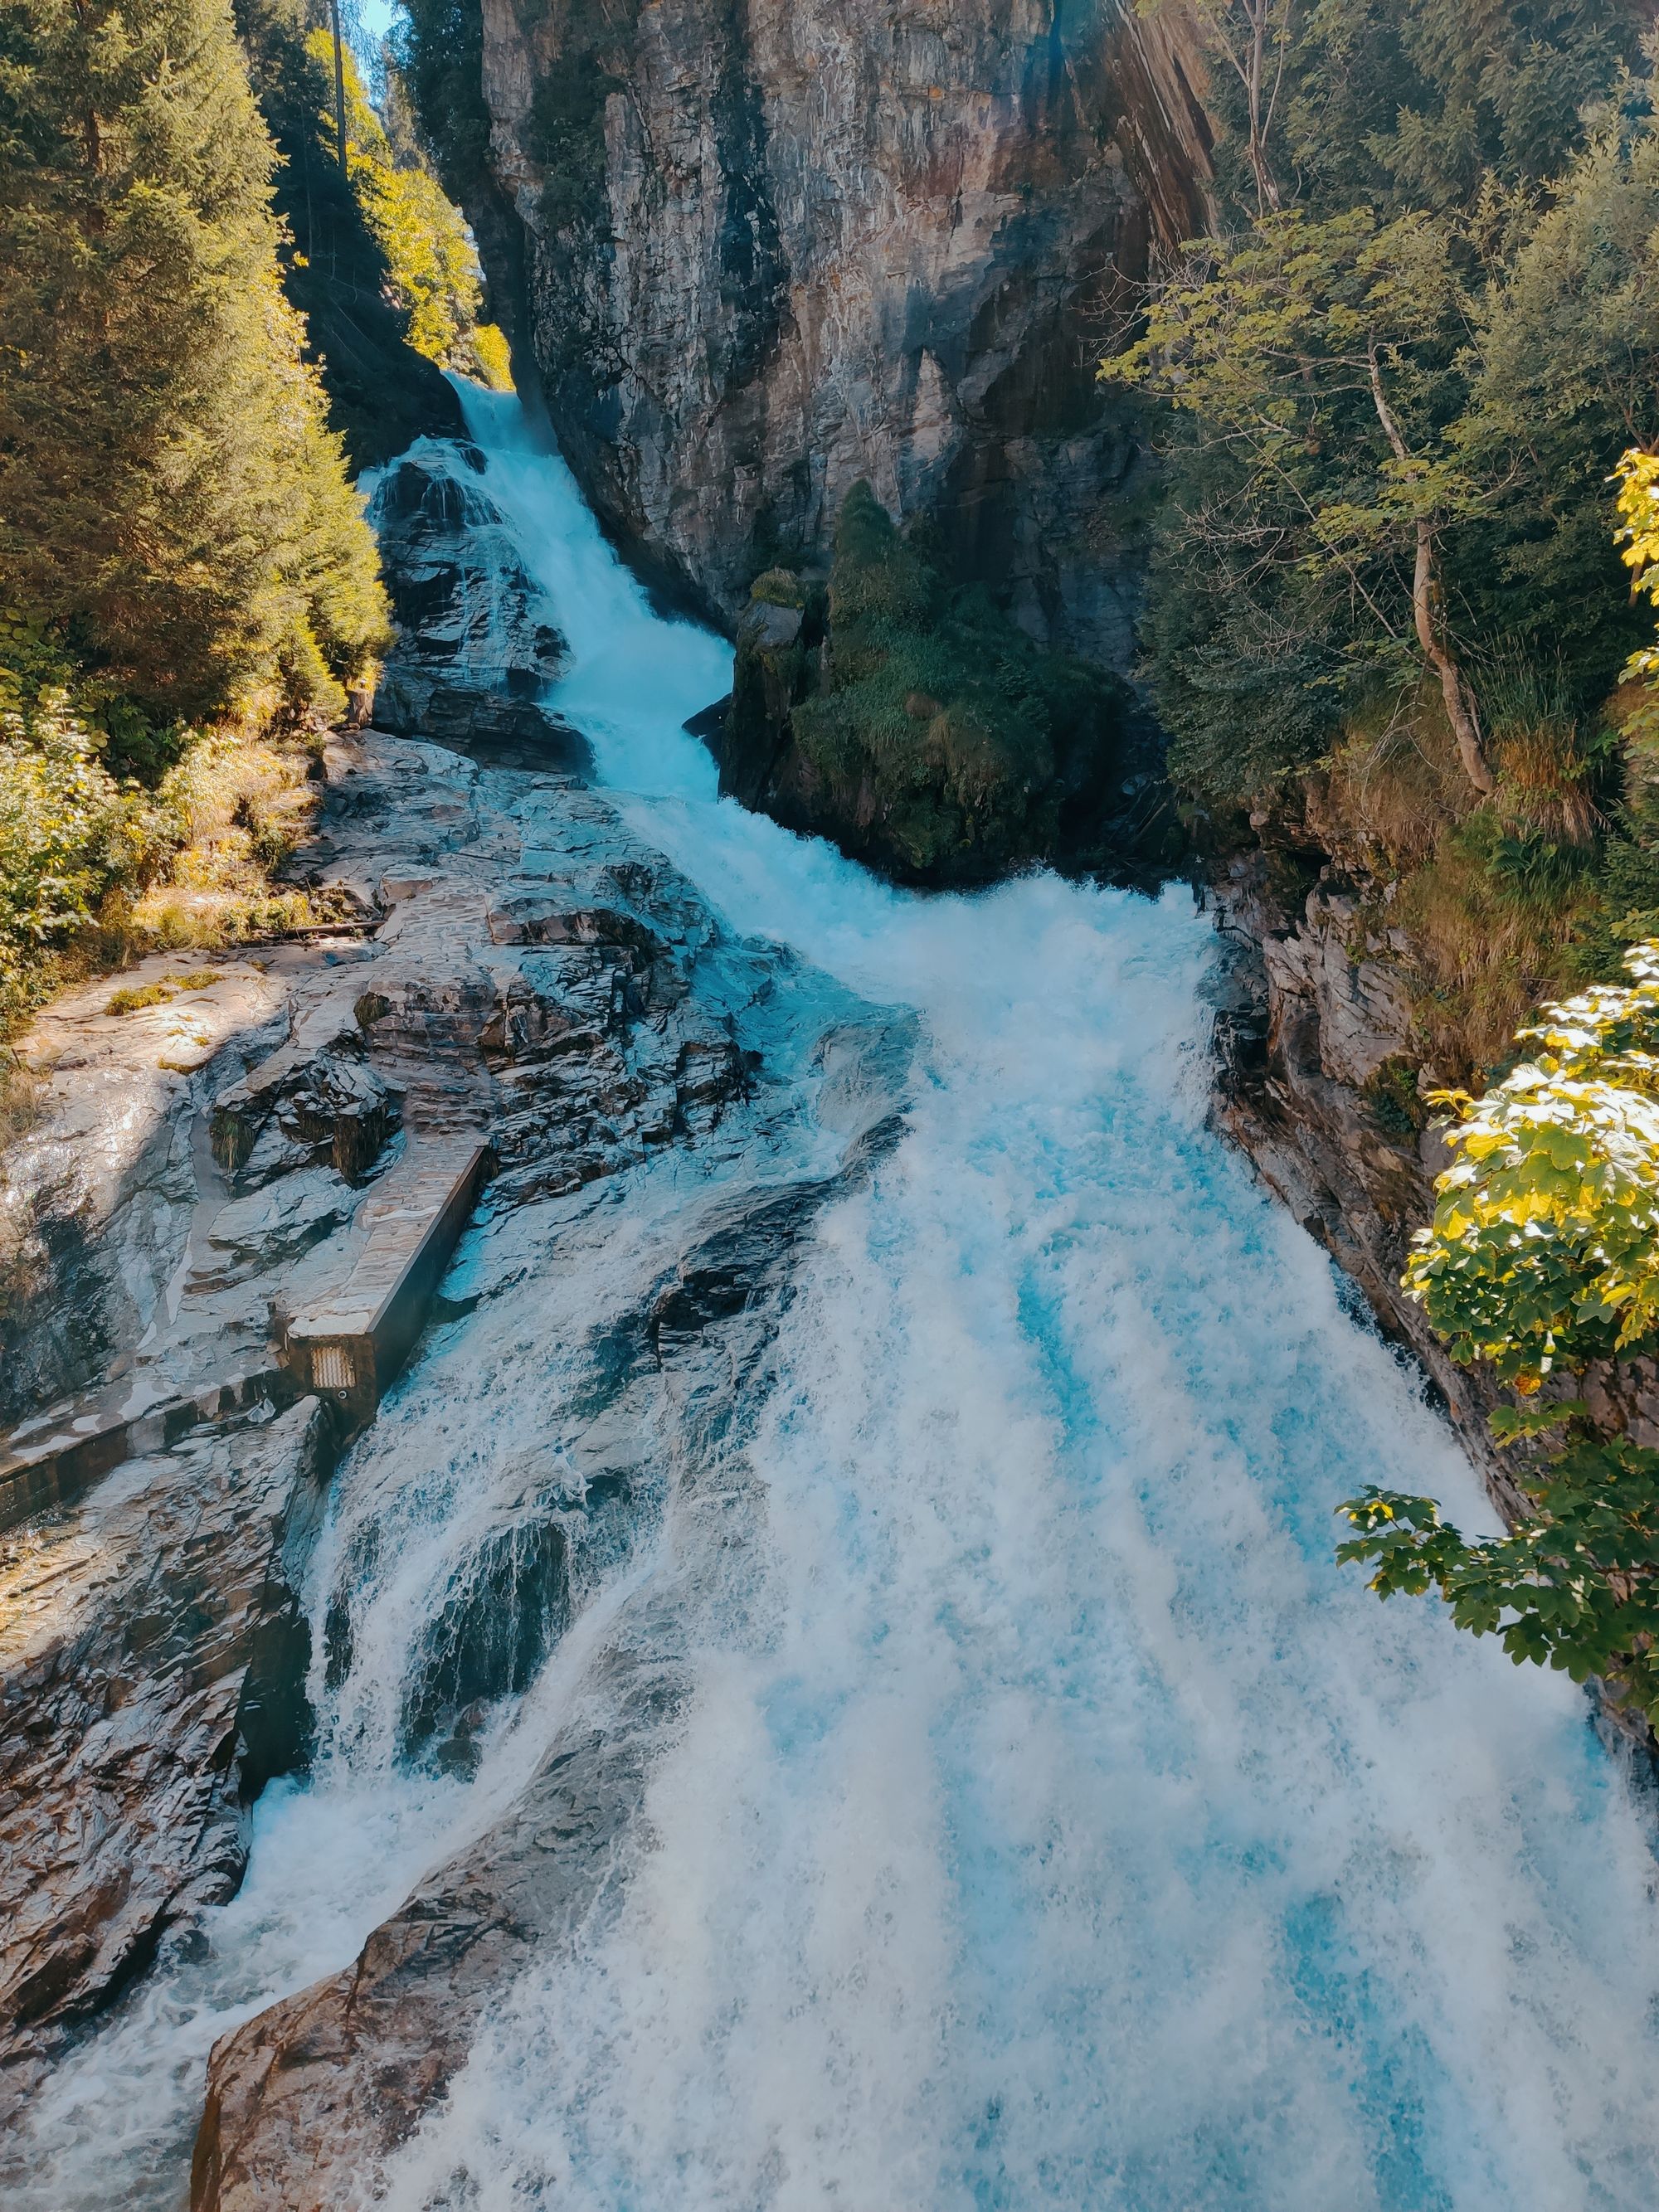 Rrwące wody wodospadu w Bad Gastein przy szlaku Alpe Adria